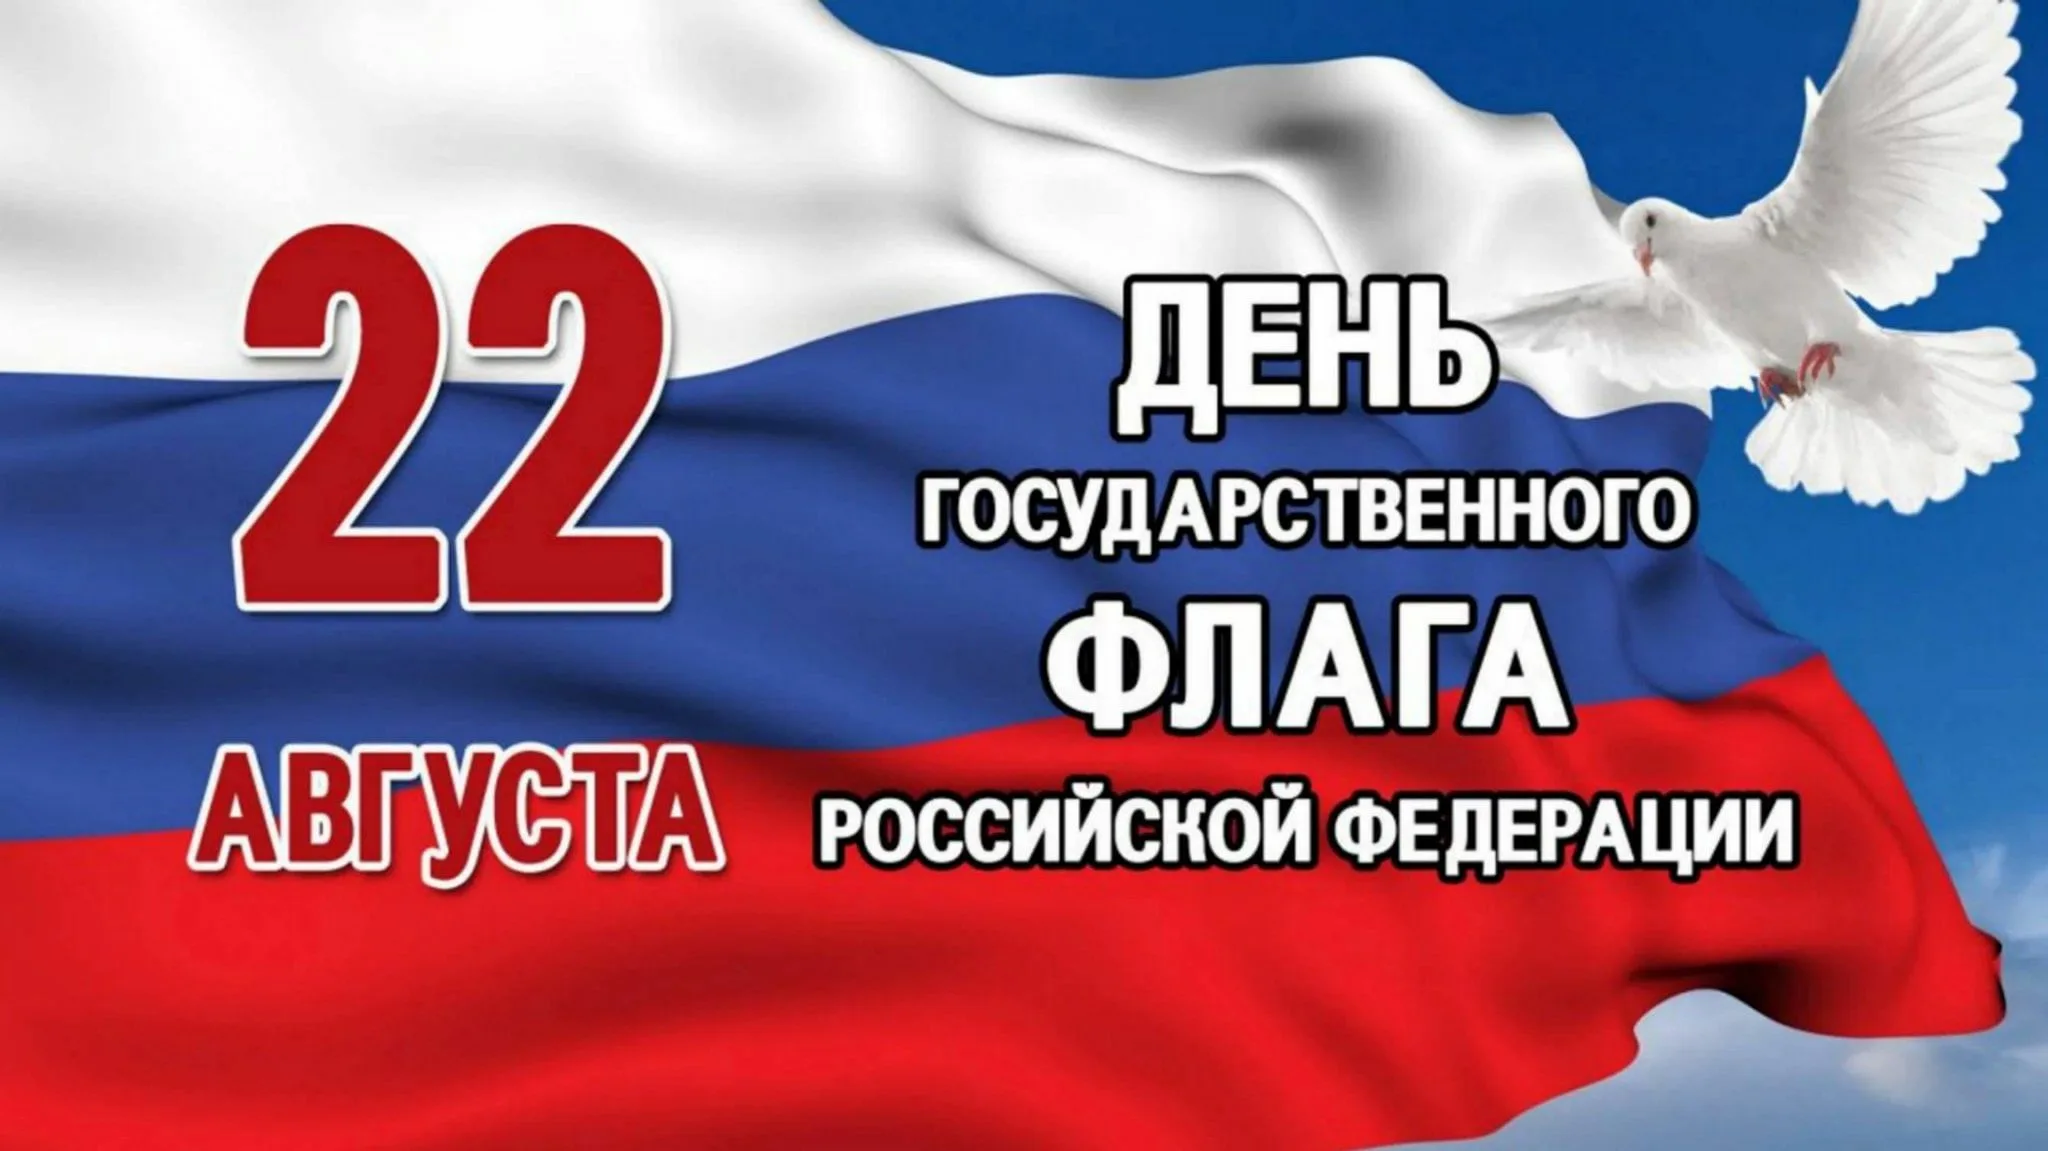 22 Августа день государственного флага Российской Федерации. 22 Августа в России отмечается день государственного флага. Флаг России с тенью. 22 Авгута день флага Росси.